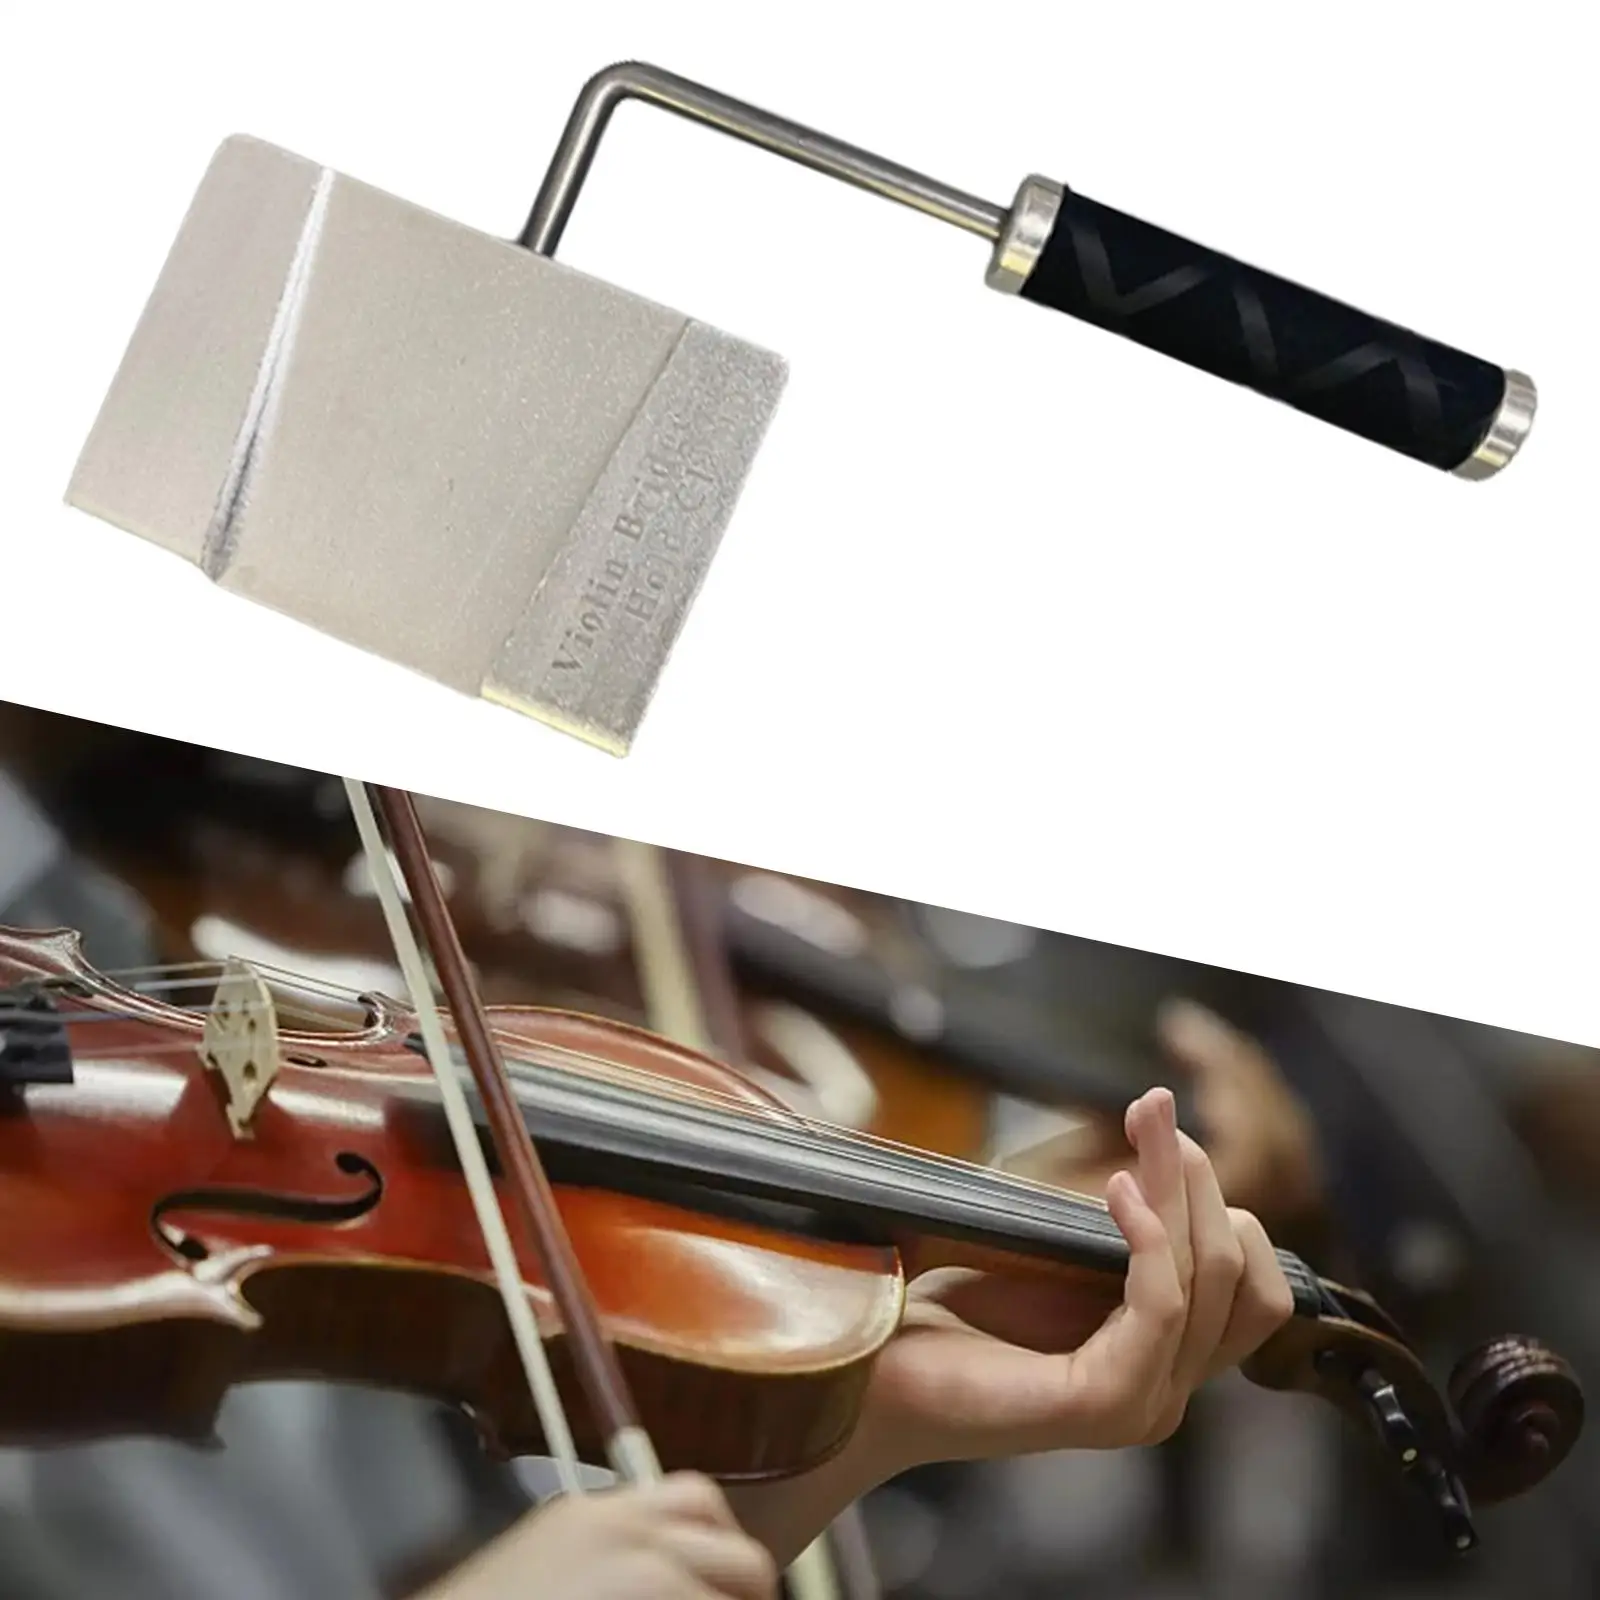 Violin Viola Bridge Clamp Tools Violin Repair Code Guitar Repair Guitar Luthier Tools Fittings Accessory Kit Violin Making Tool